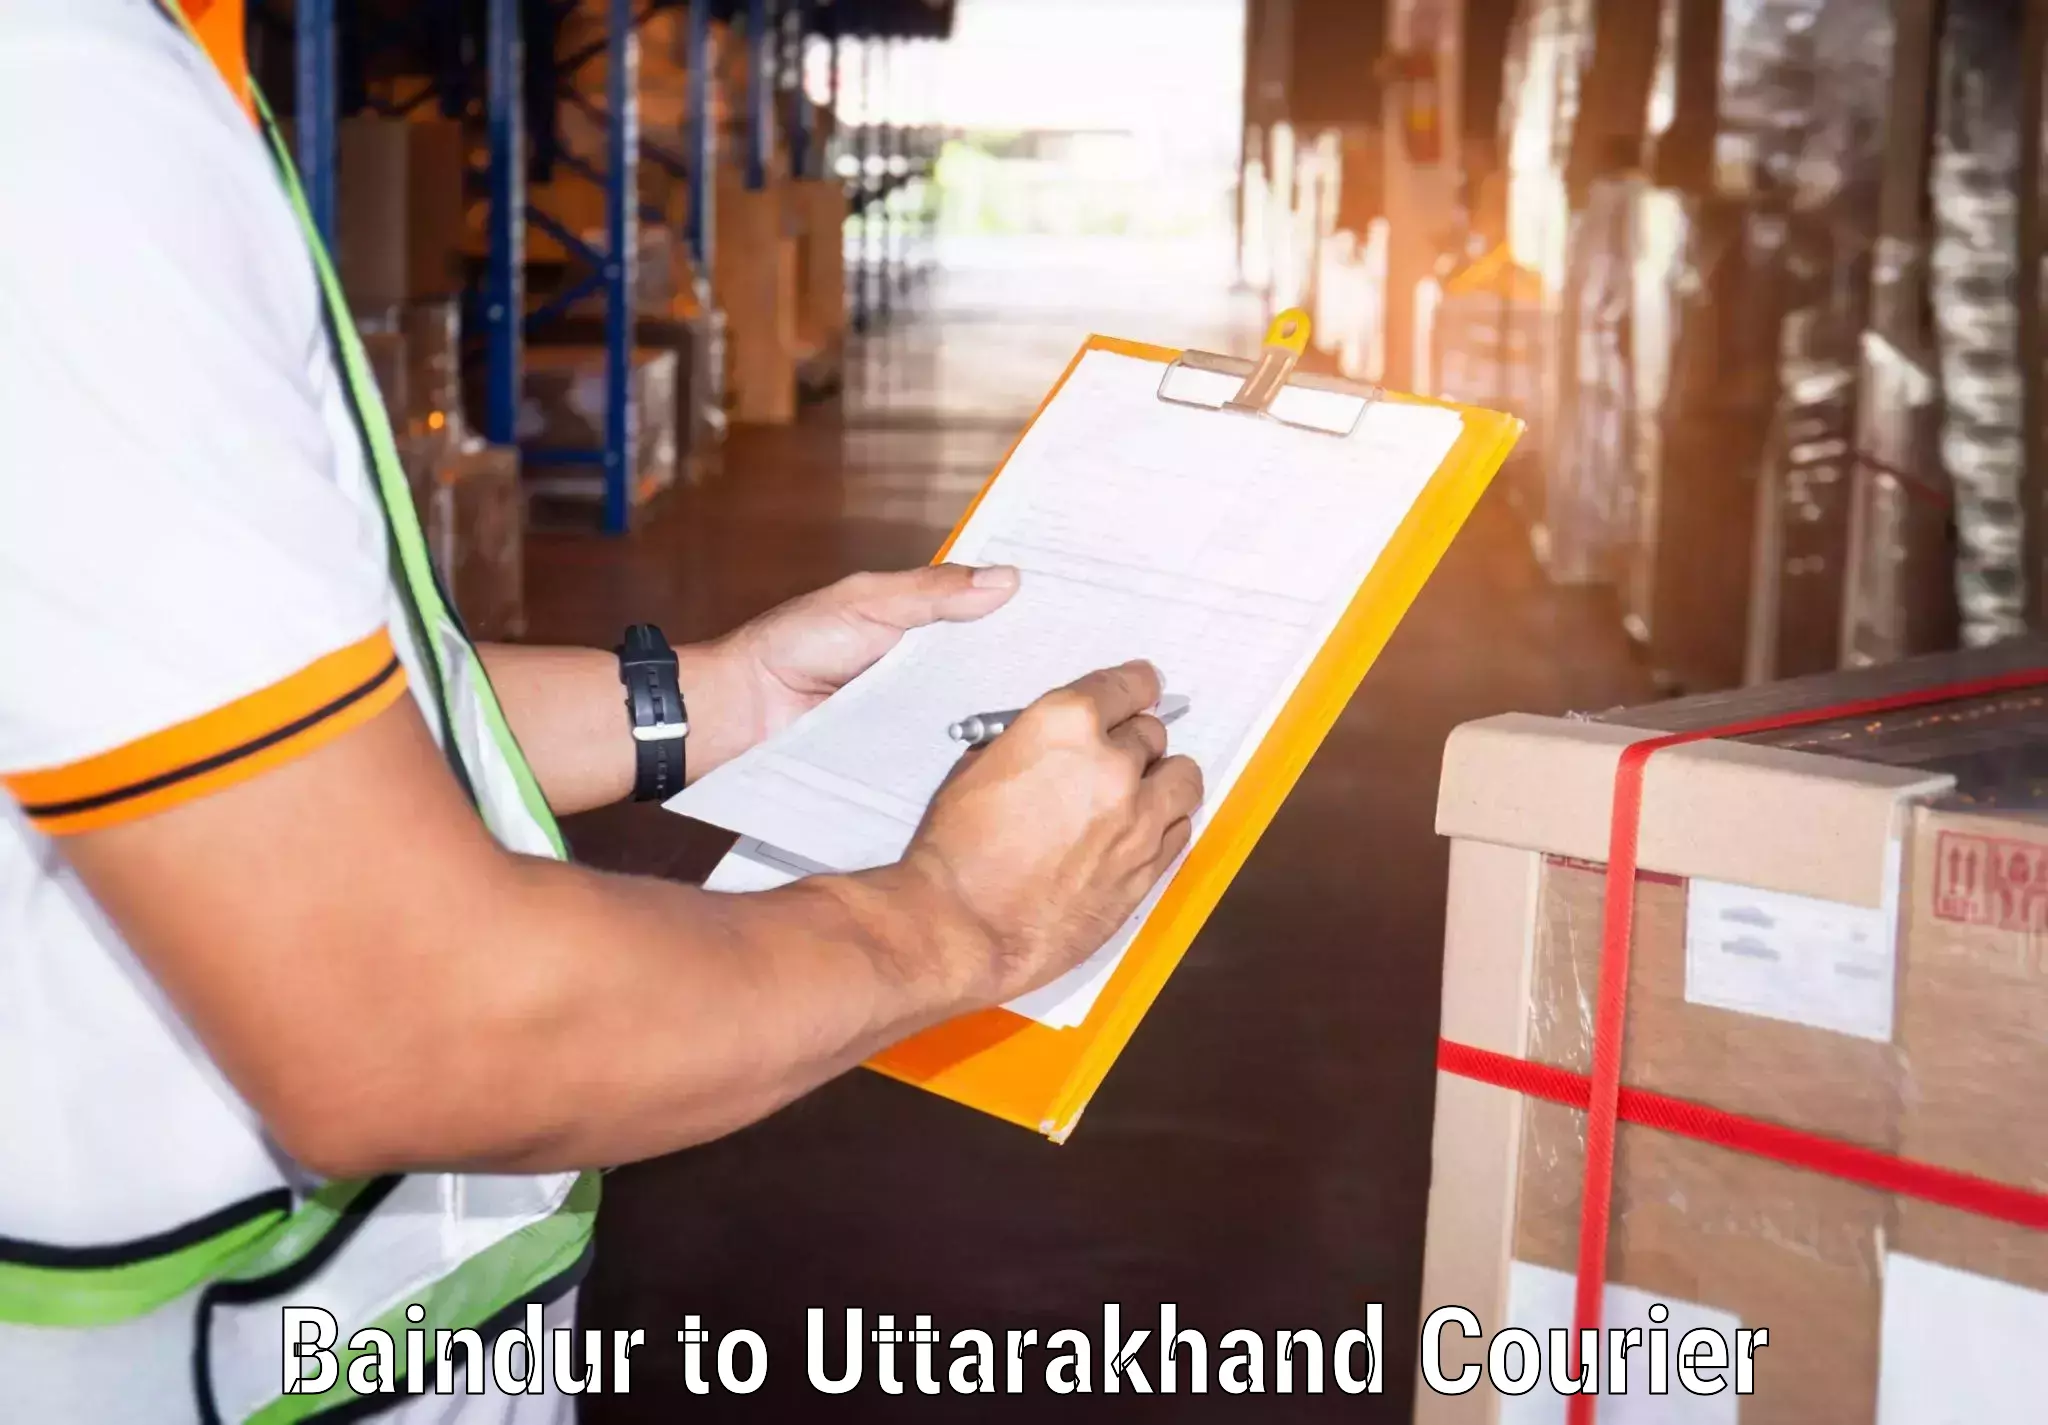 Urban courier service Baindur to Dwarahat